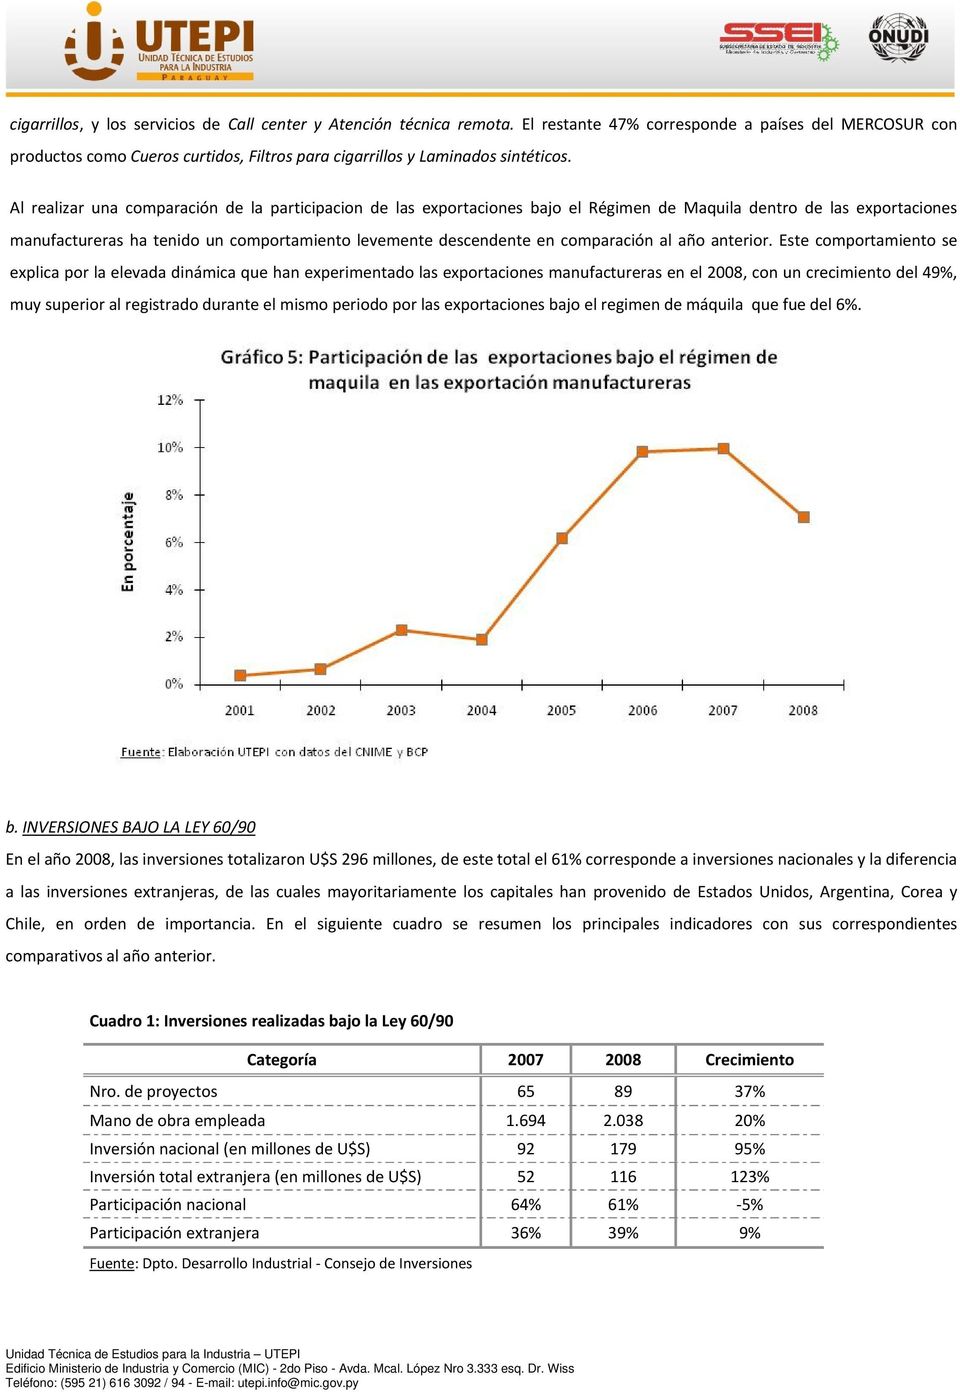 Al realizar una comparación de la participacion de las exportaciones bajo el Régimen de Maquila dentro de las exportaciones manufactureras ha tenido un comportamiento levemente descendente en